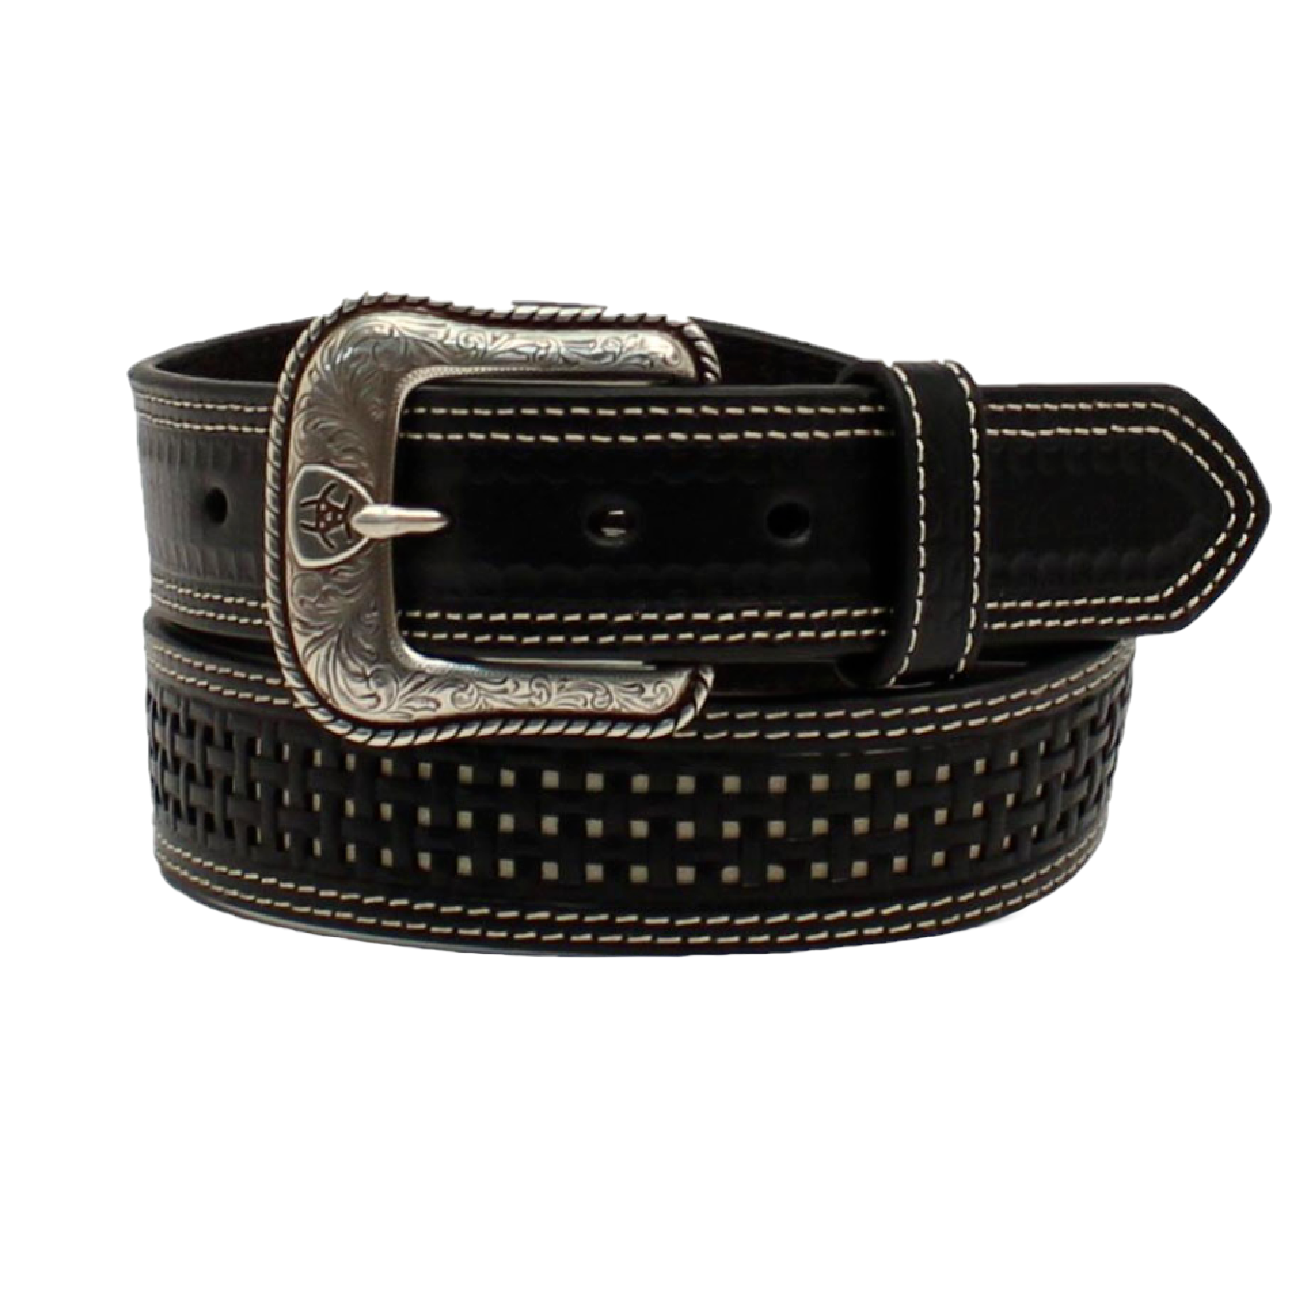 Ariat® Men's Basket Weave Black Leather Belt A1035801